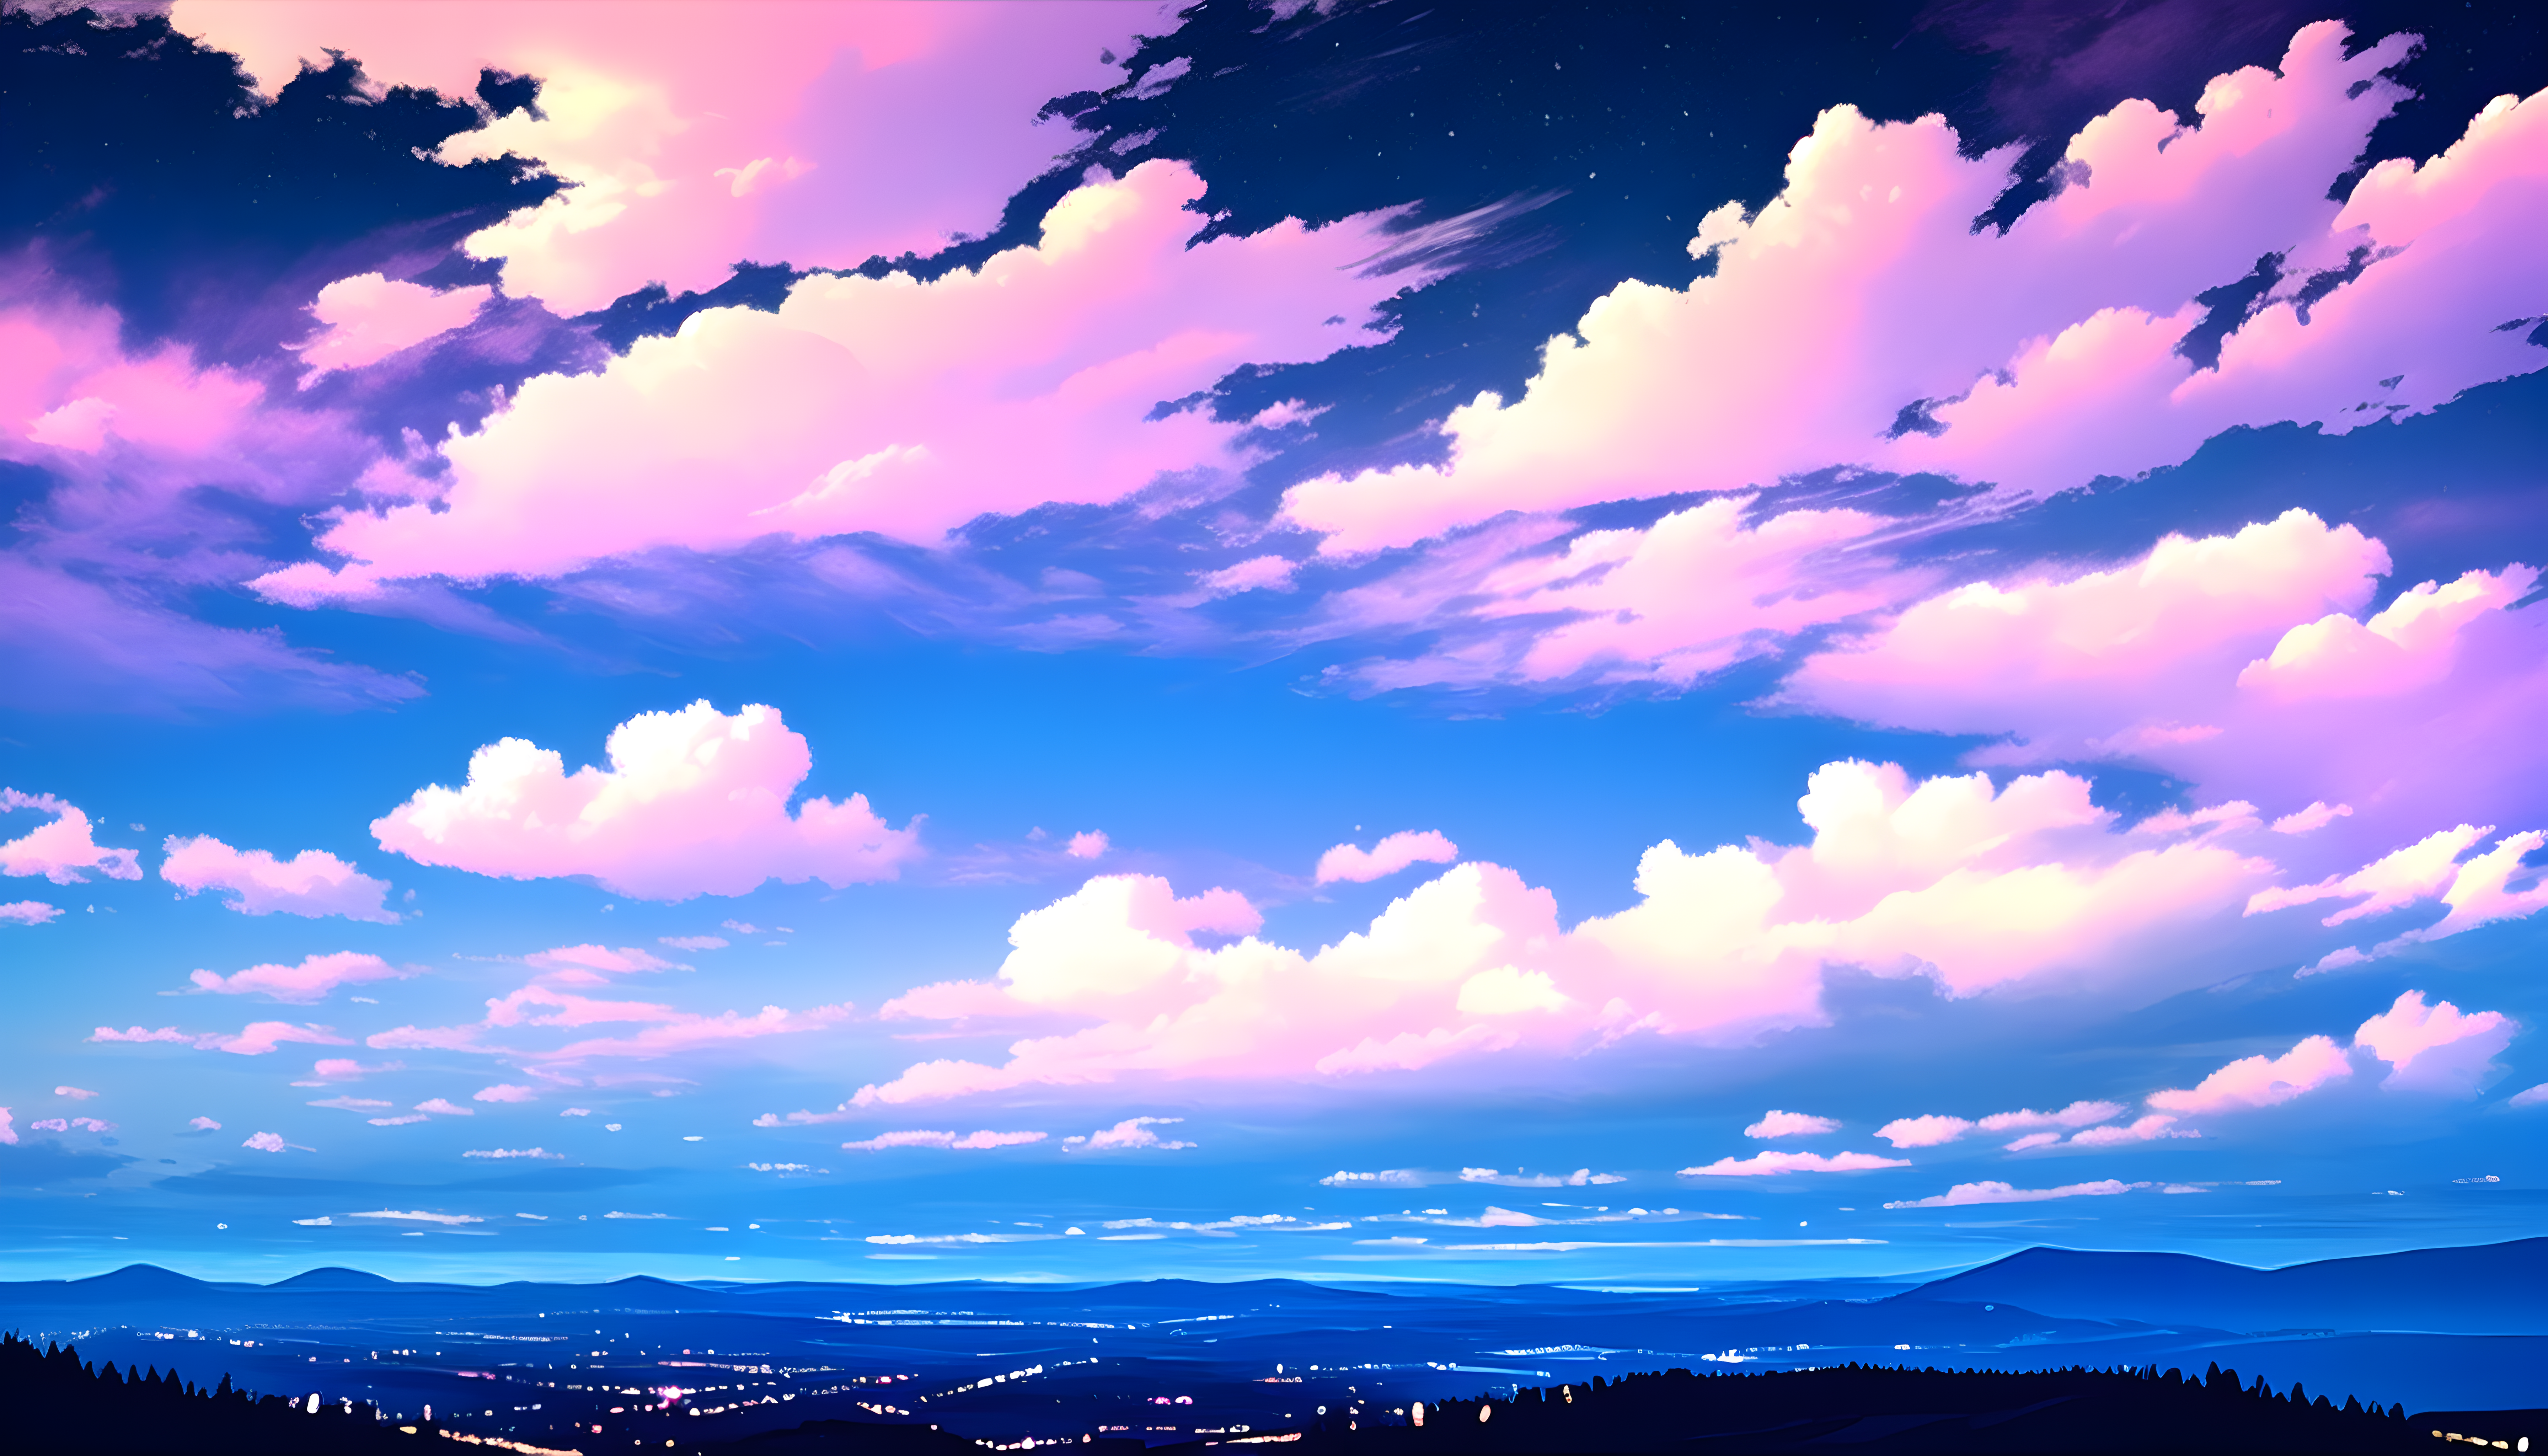 Anime Scenery Wallpapers HD Free download  PixelsTalkNet